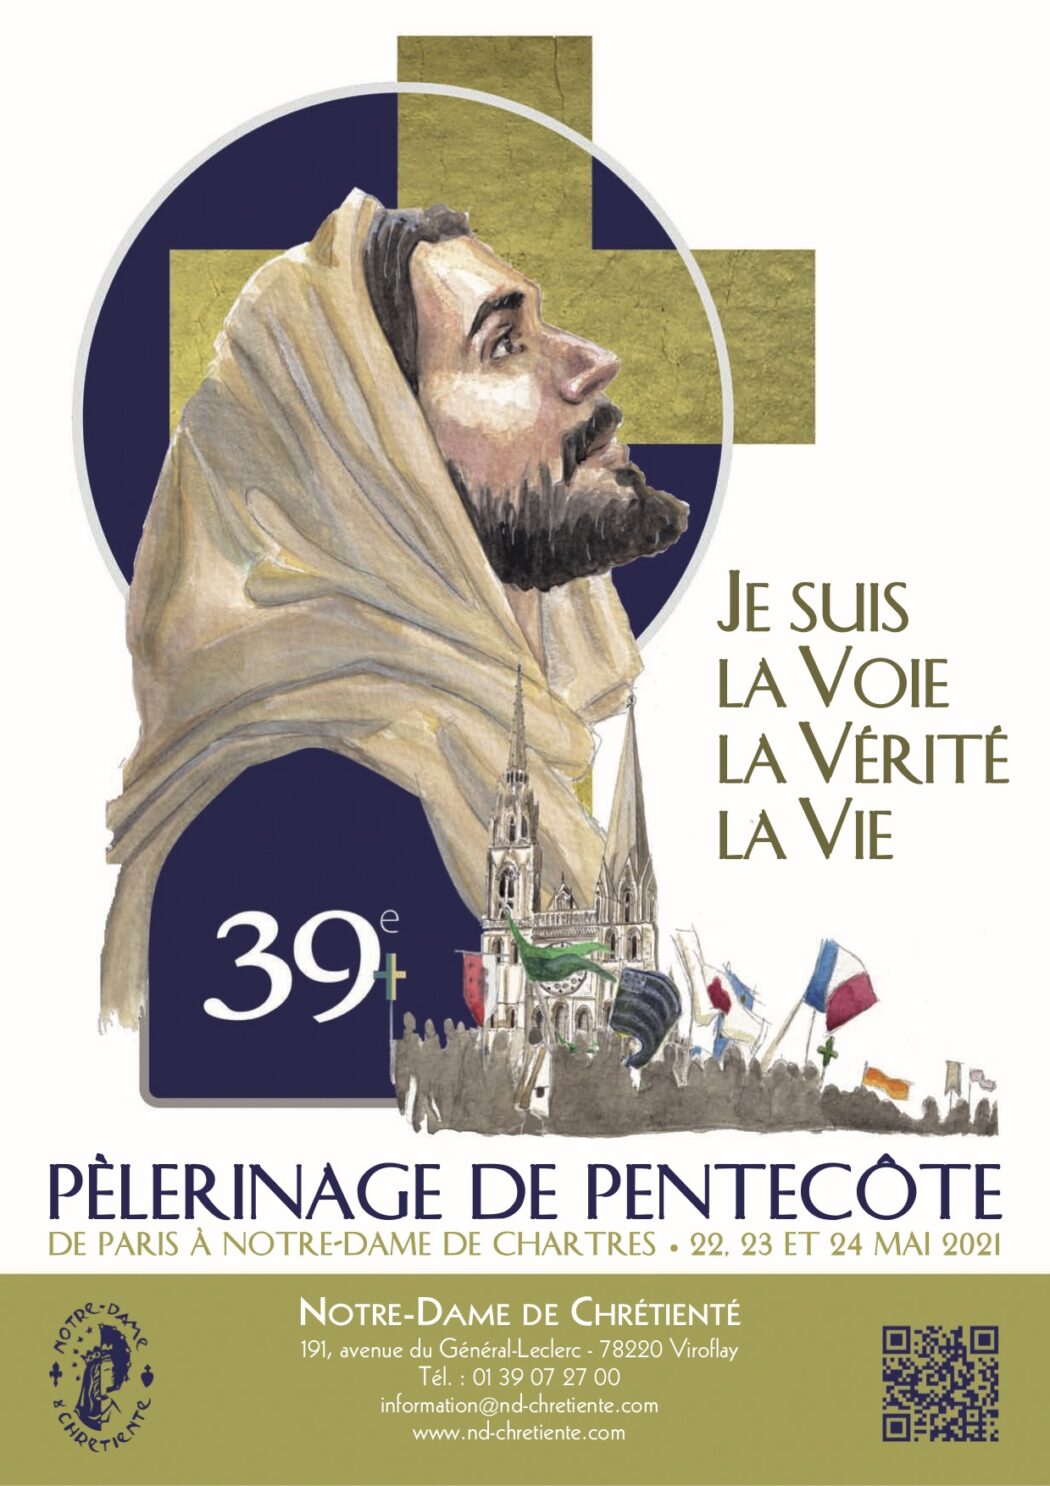 Pèlerinage de Chartres sur le thème “Je suis la voie, la vérité, la vie”